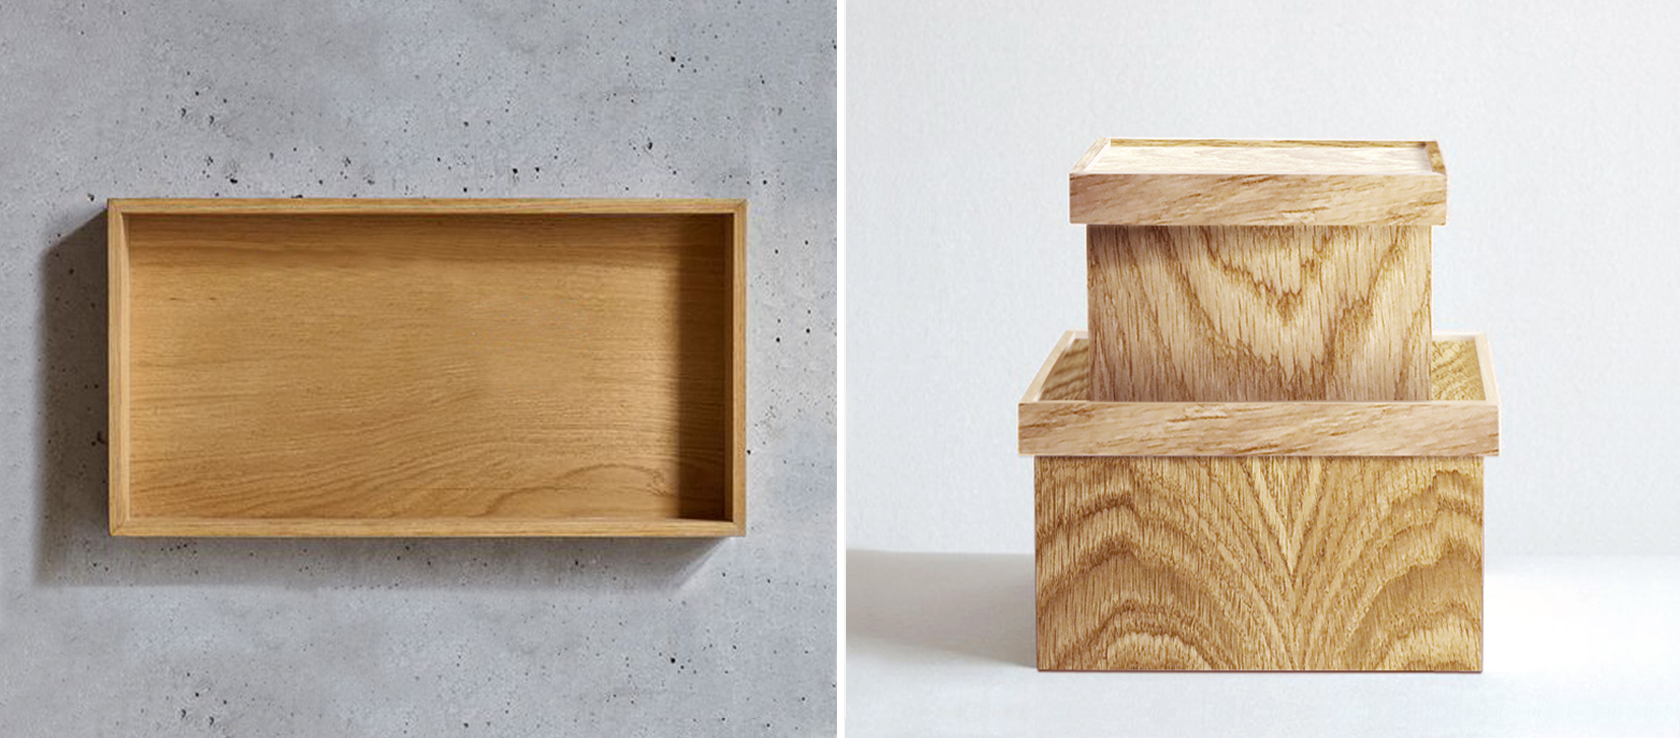 Деревянные коробки для часов. Производство и изготовление коробок из дерева для часов